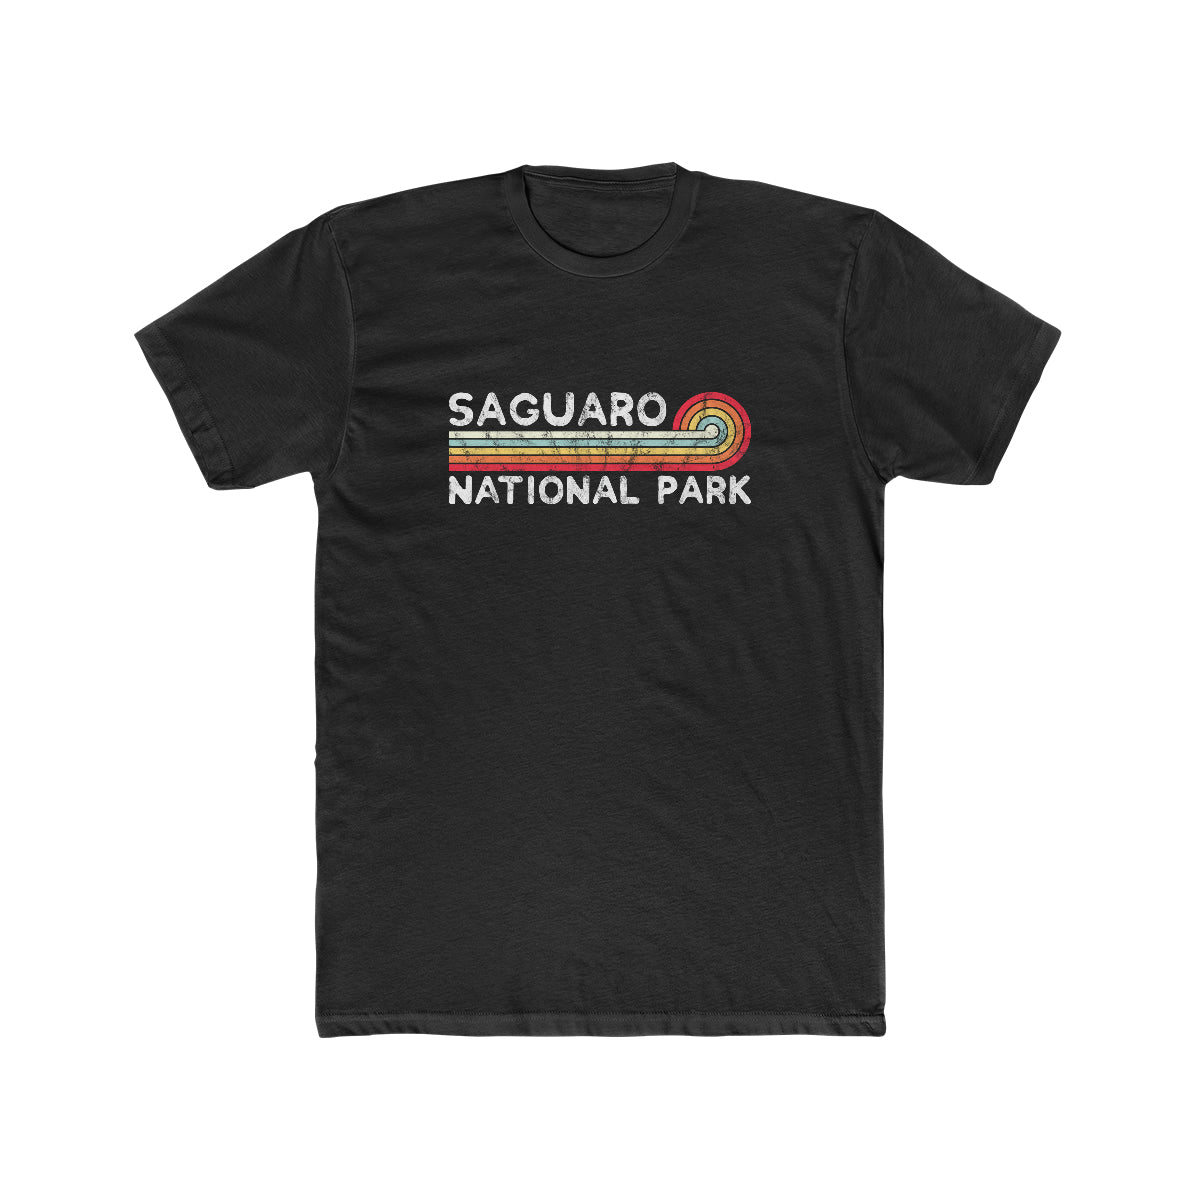 Saguaro National Park T-Shirt - Vintage Stretched Sunrise